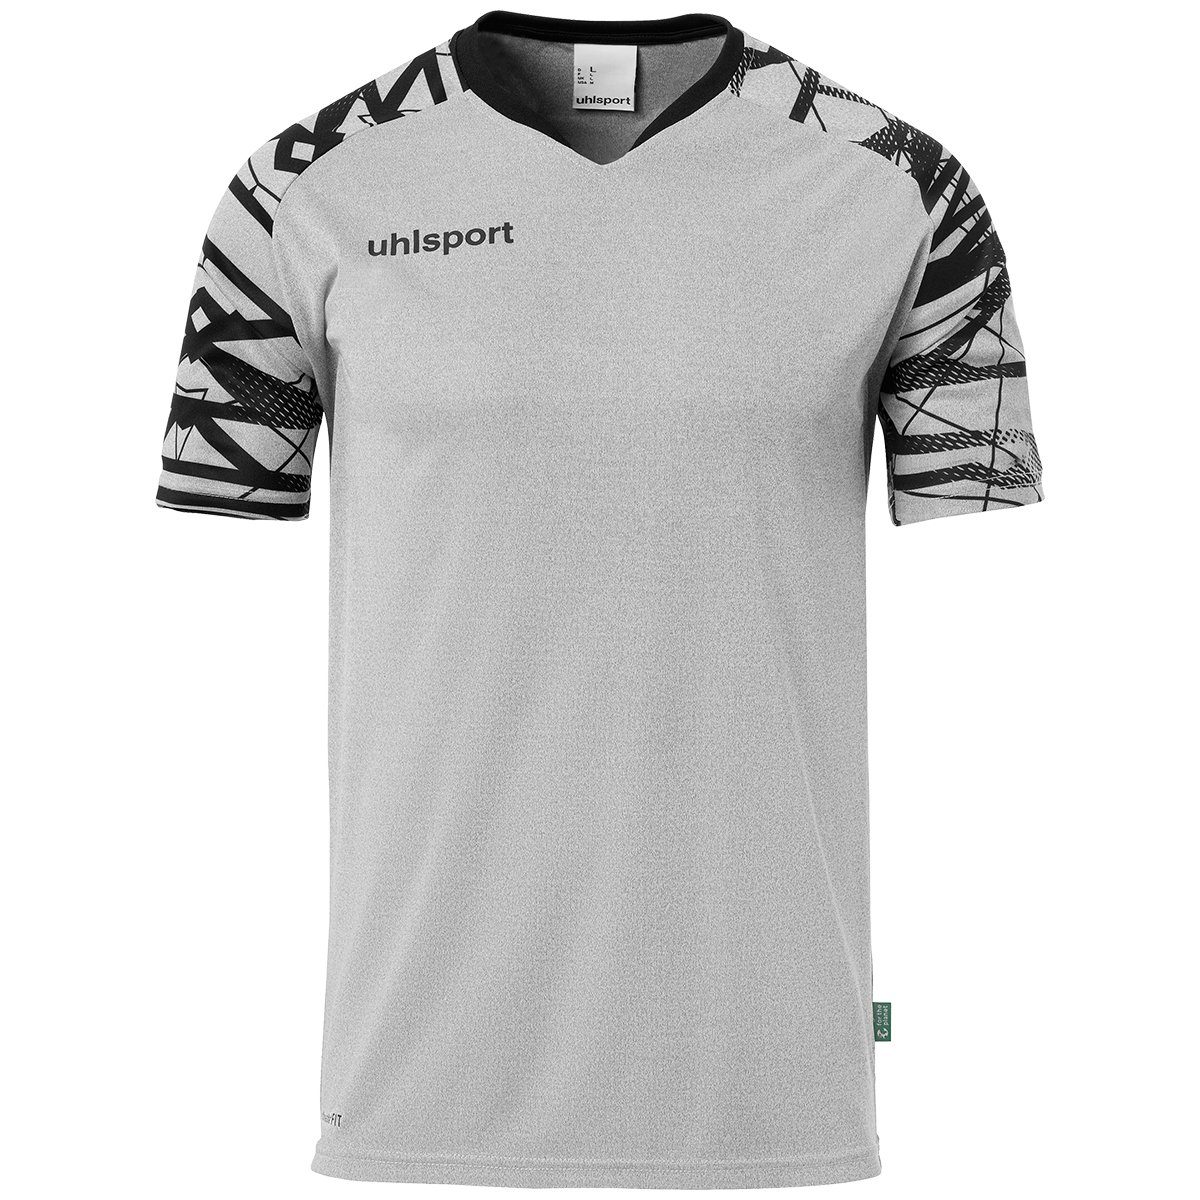 uhlsport Trainingsshirt uhlsport Trainings-T-Shirt GOAL dark 25 atmungsaktiv KURZARM melange/schwarz grau TRIKOT